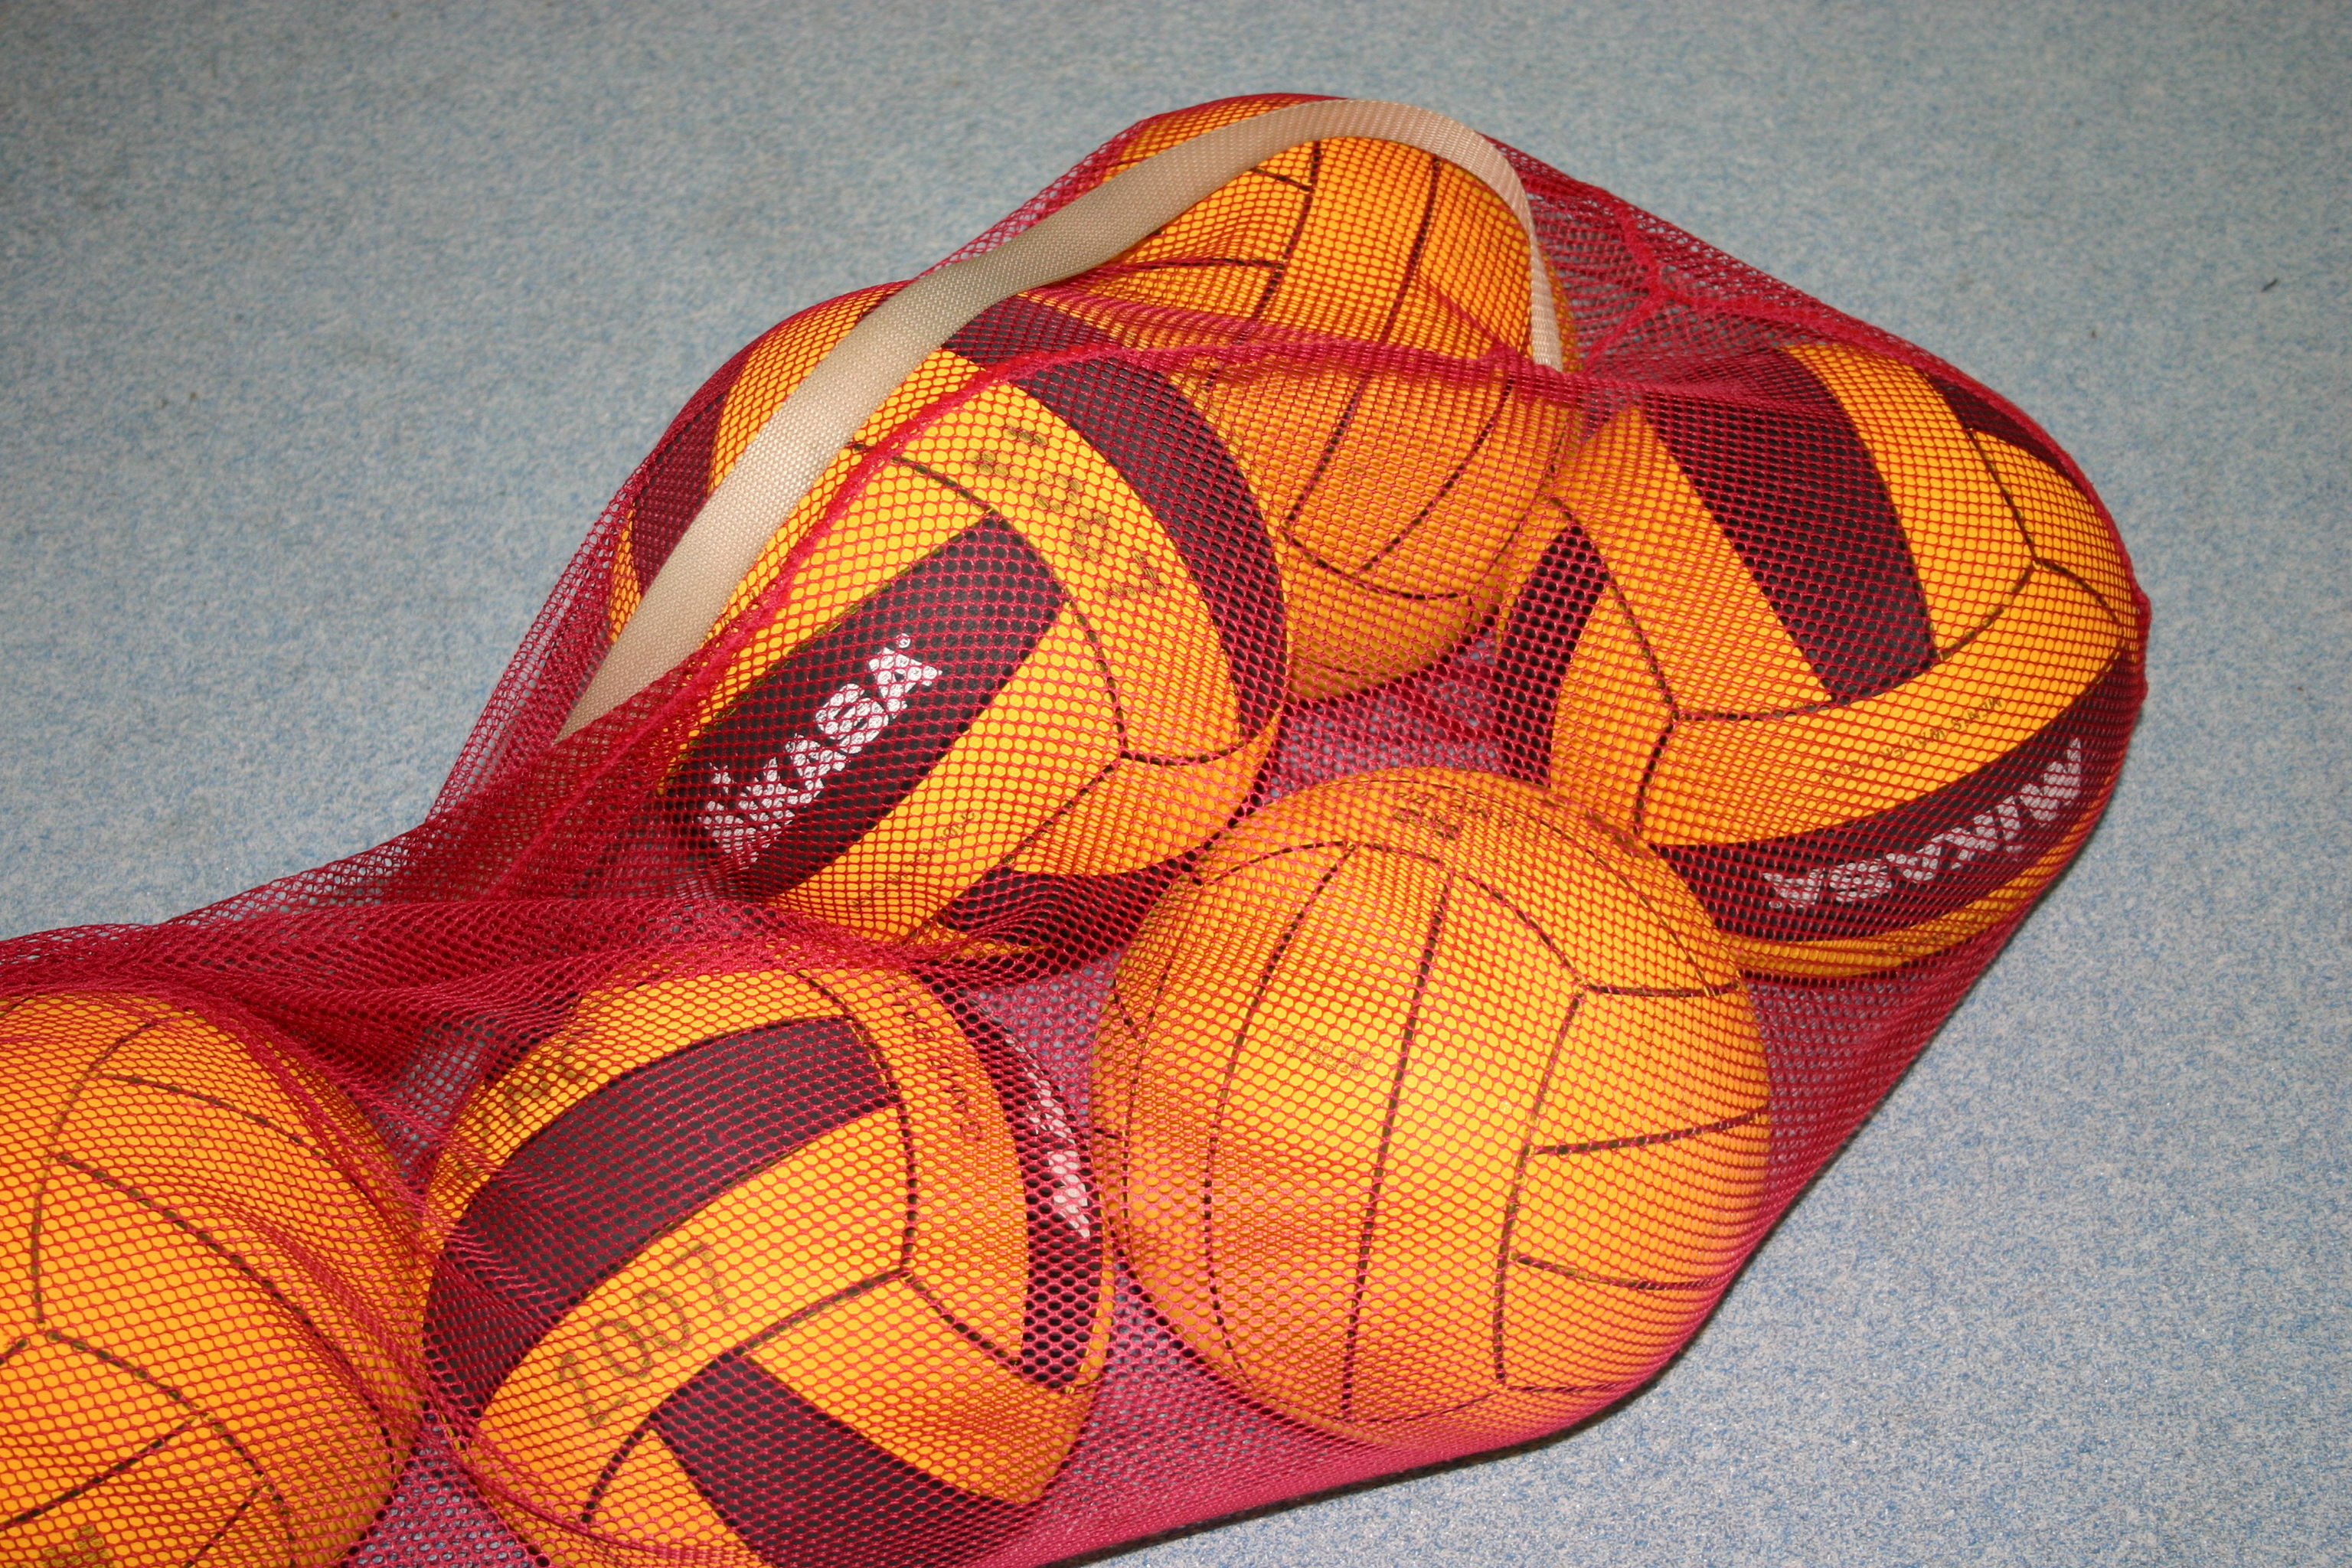 Water polo balls